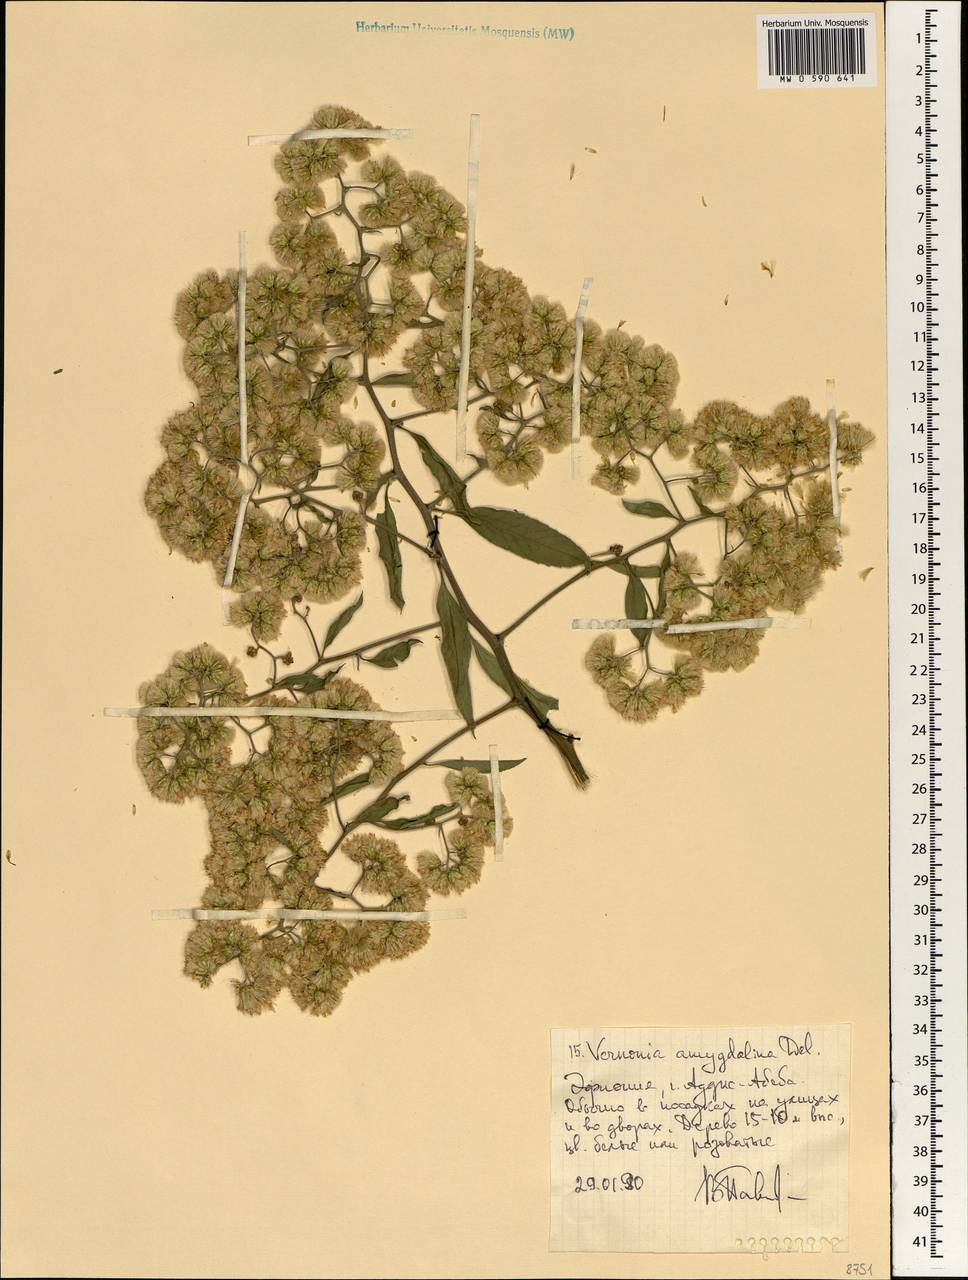 Gymnanthemum amygdalinum (Delile) Sch. Bip. ex Walp., Африка (AFR) (Эфиопия)